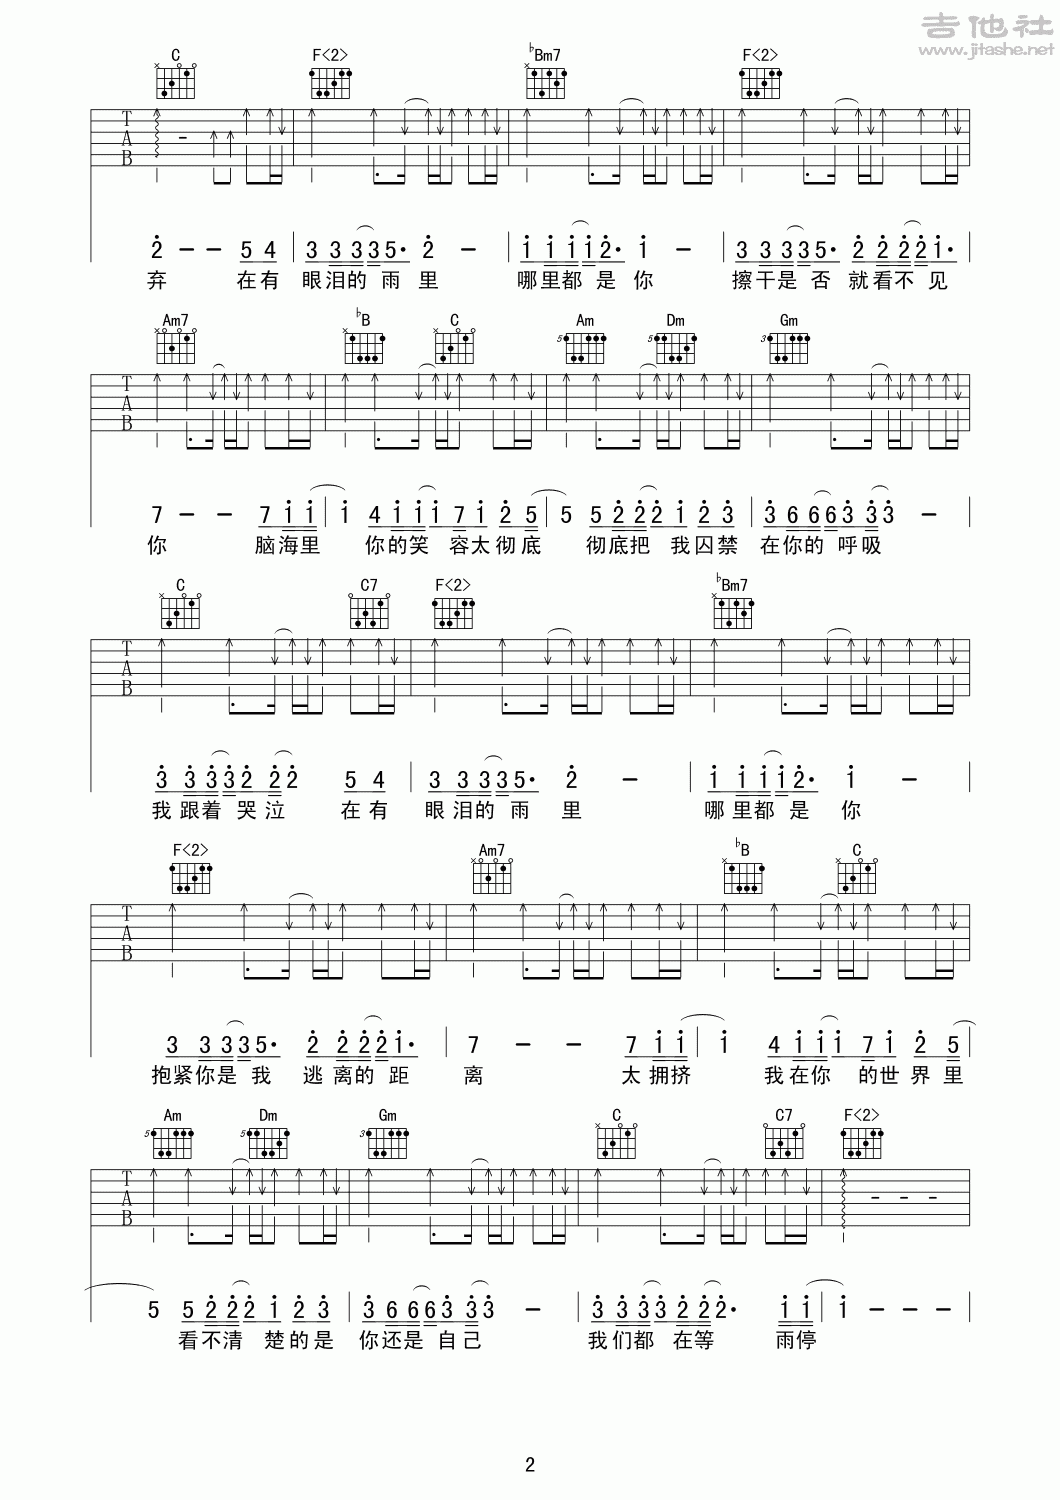 周杰伦 - 龙卷风[弹唱] 吉他谱